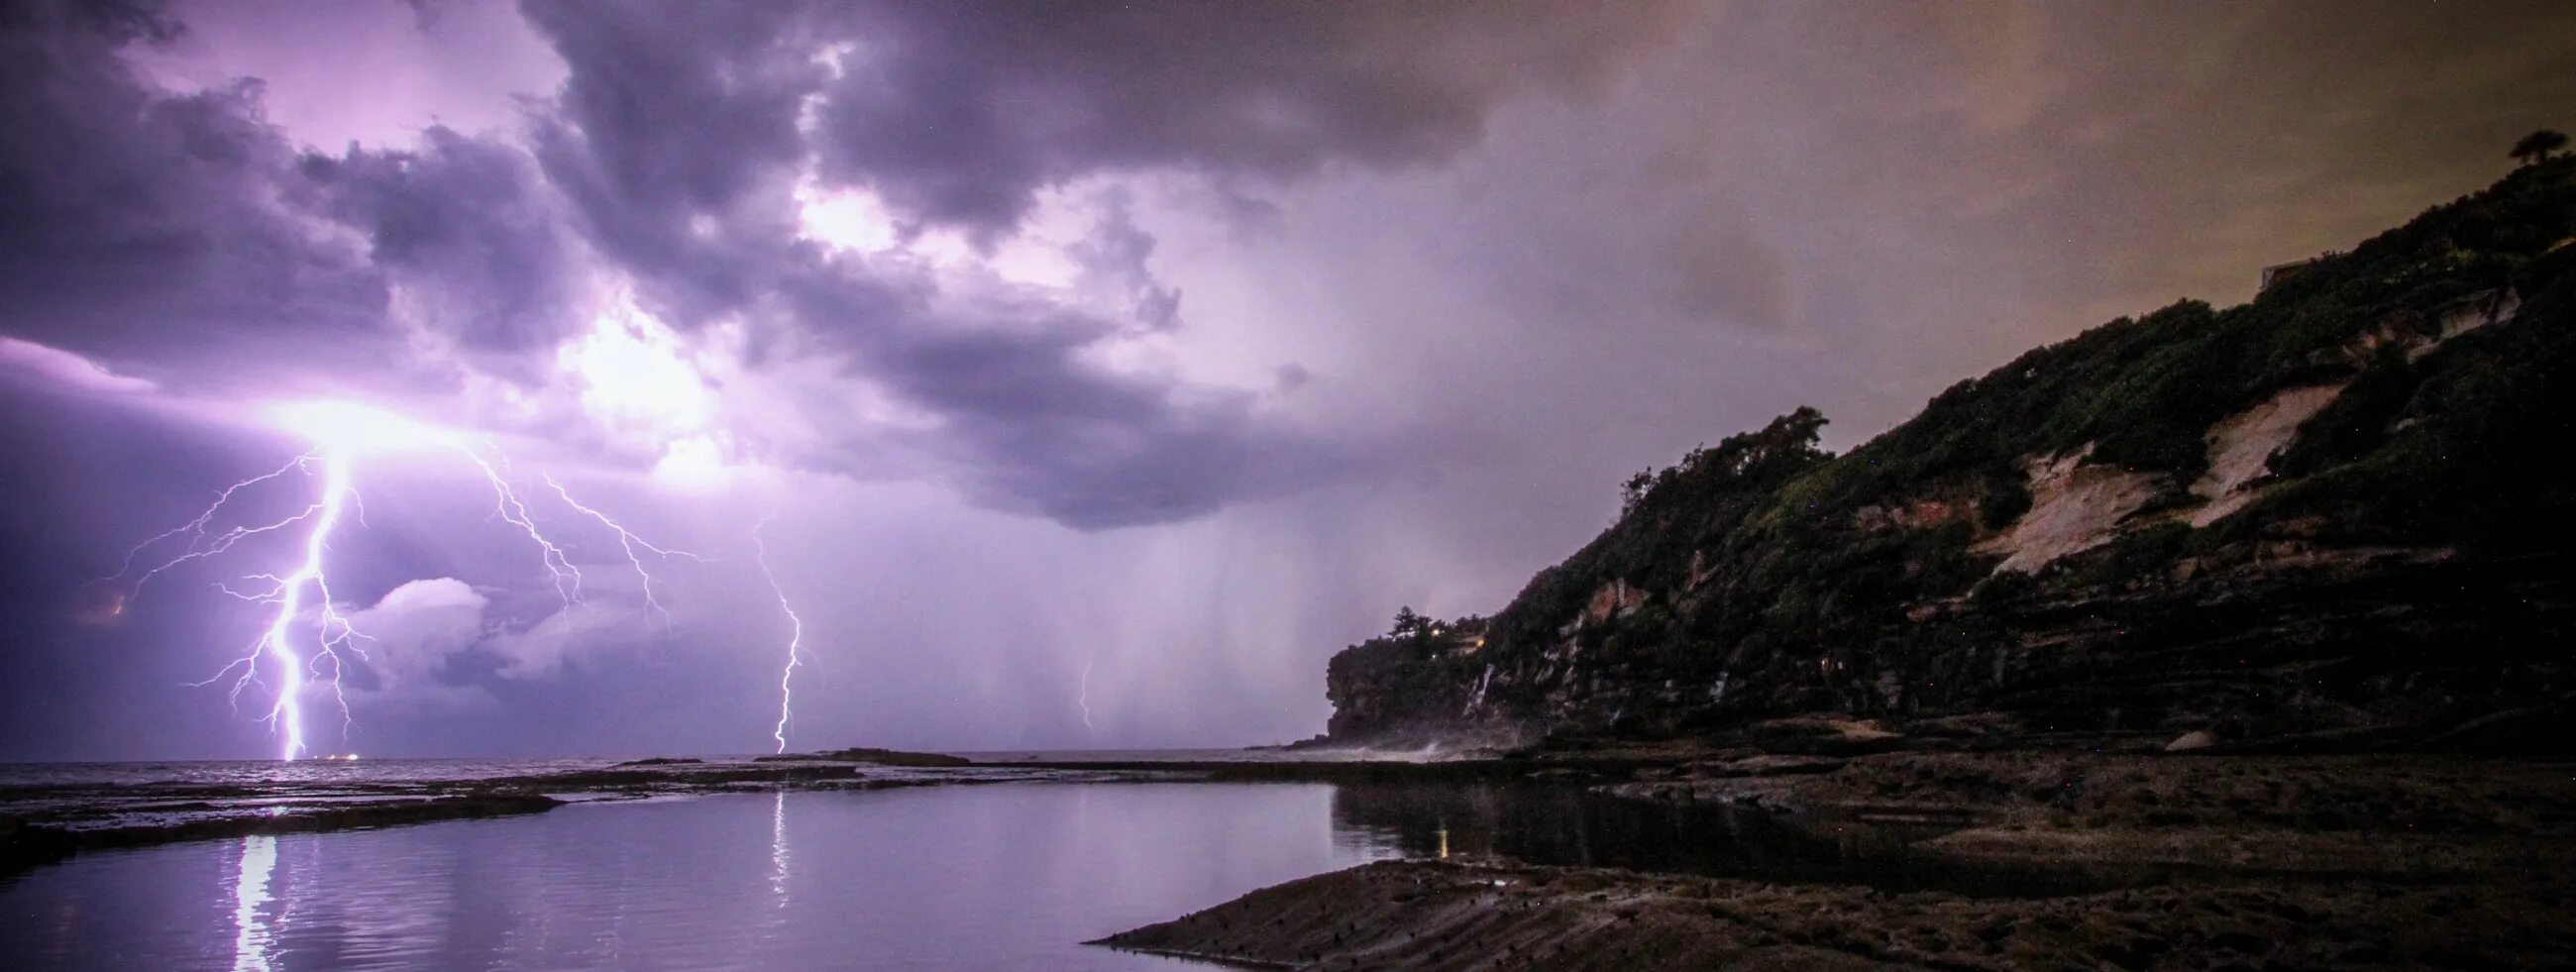 Пользоваться телефоном во время грозы. Буря на озере. Фото буря на озере. Безумное озеро буря. Rainy Storm Island.